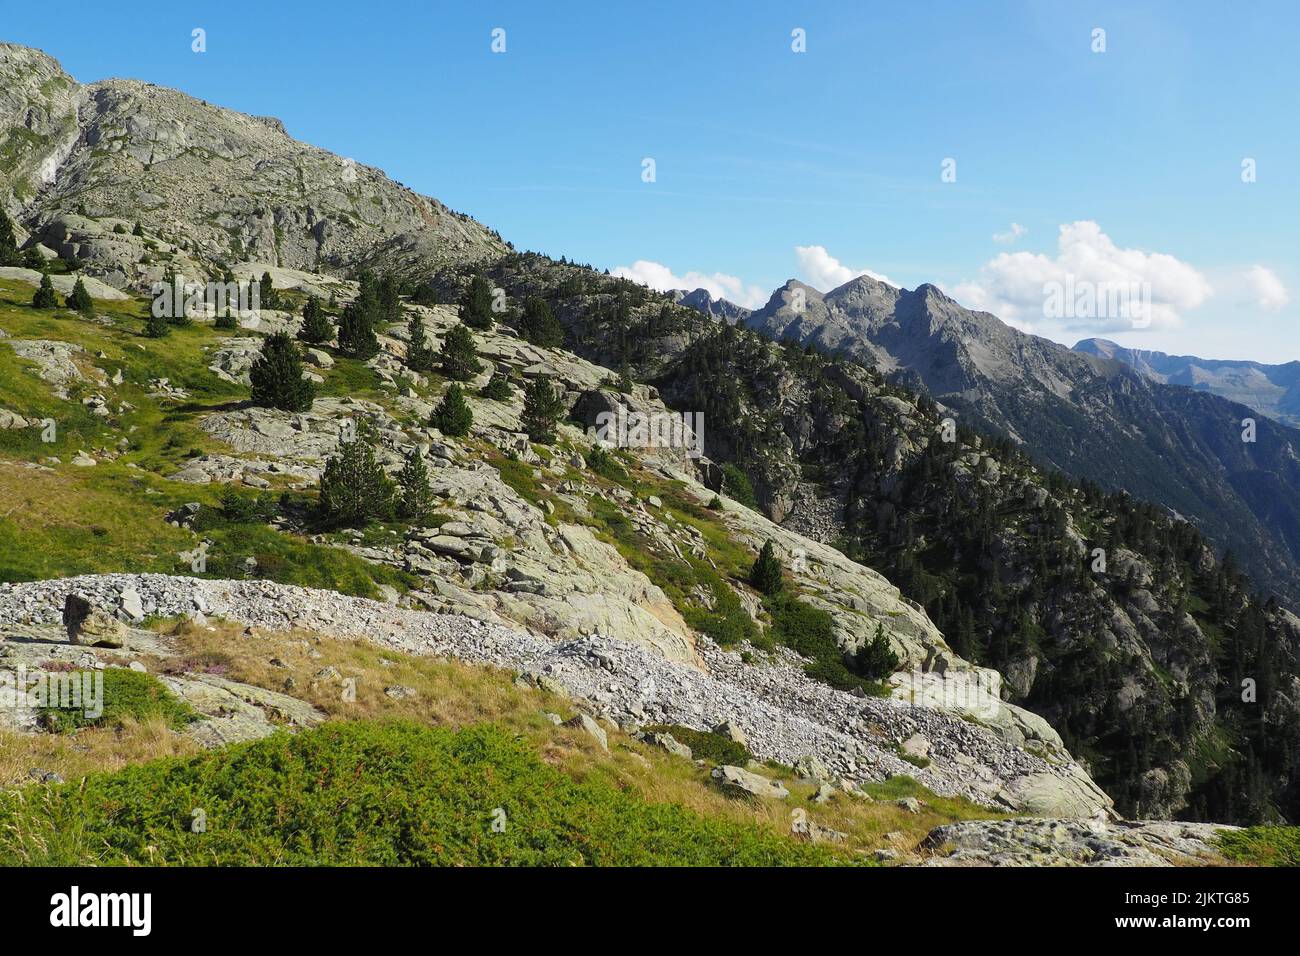 Una vista panoramica della catena montuosa dei Pirenei ricoperta di verde in una giornata di sole Foto Stock